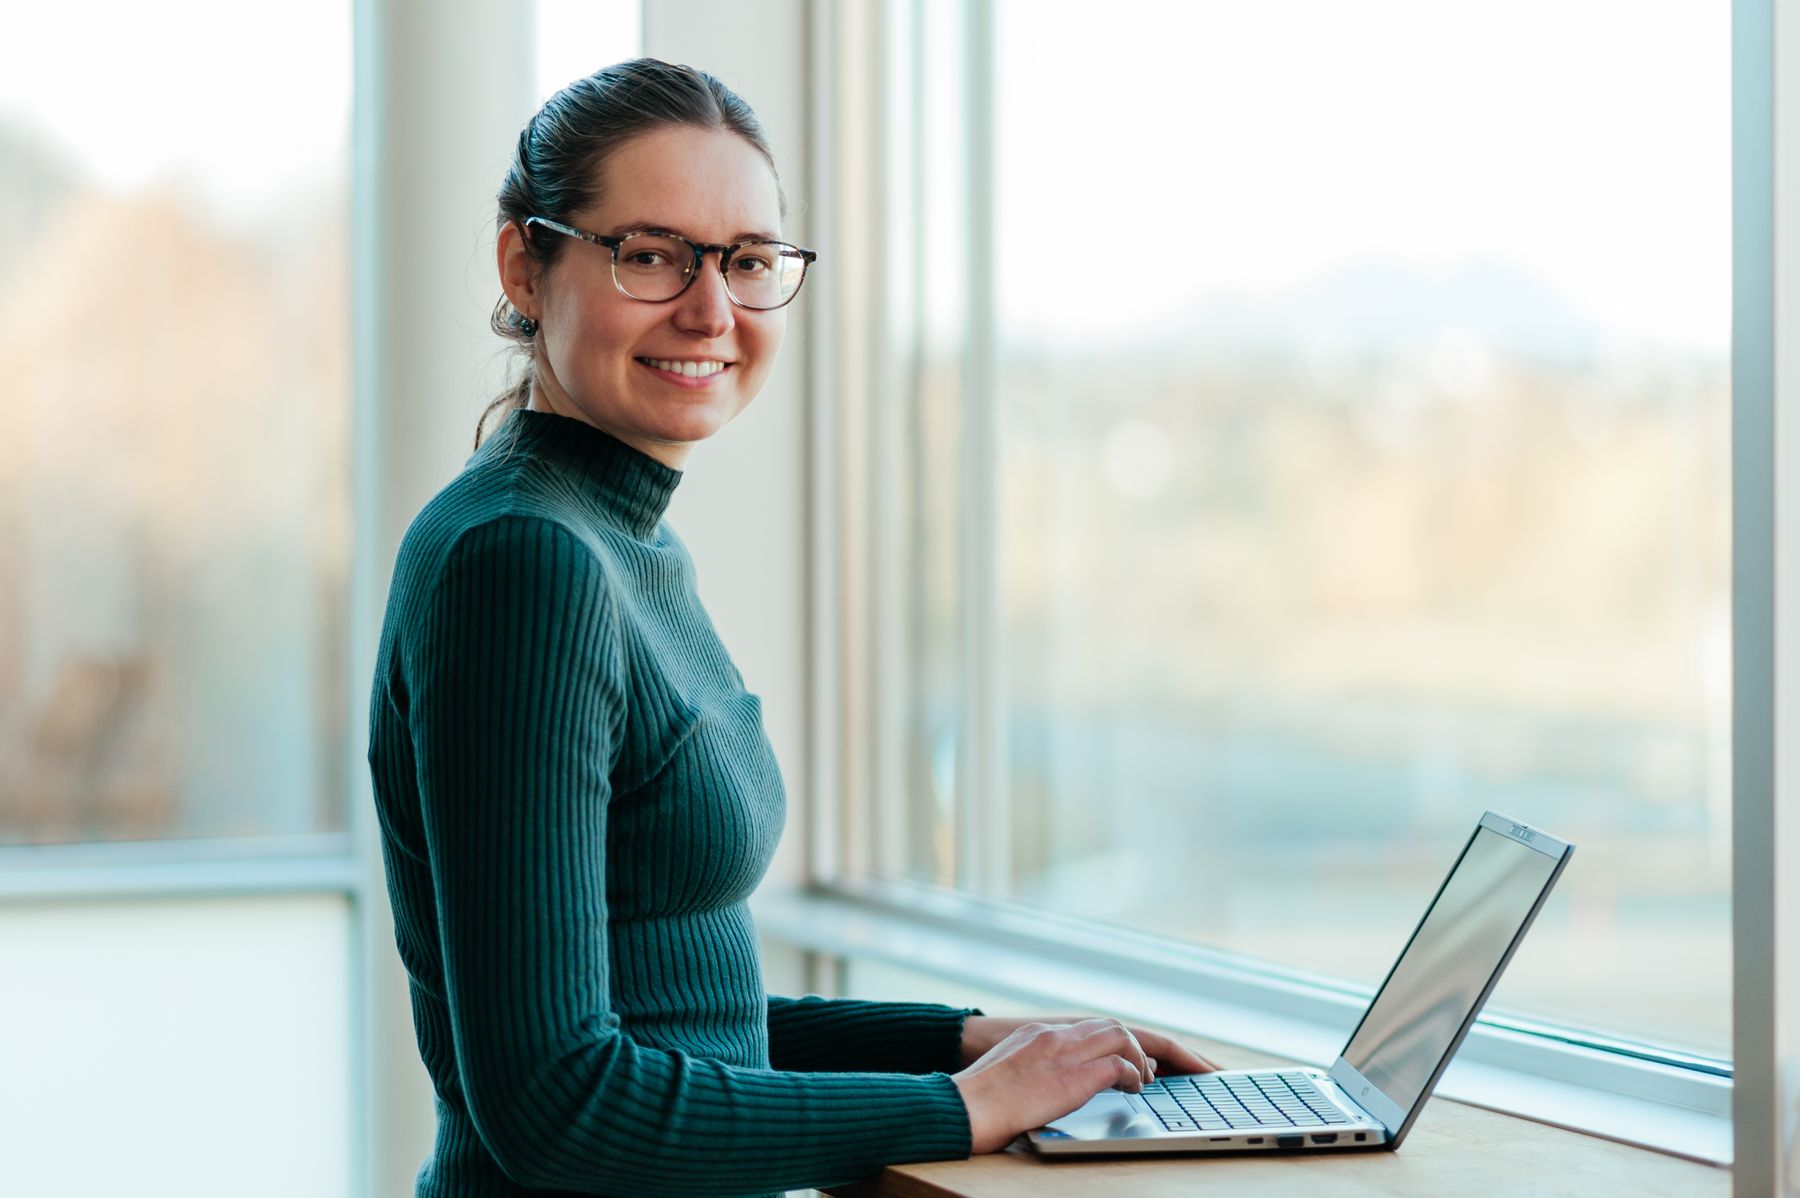 Julia Wagner, kundeanalytiker i Ishavskraft, er stolt over innsatsen husholdningene gjør. Her smilende foran PCen sin.​​​​‌﻿‍﻿​‍​‍‌‍﻿﻿‌﻿​‍‌‍‍‌‌‍‌﻿‌‍‍‌‌‍﻿‍​‍​‍​﻿‍‍​‍​‍‌﻿​﻿‌‍​‌‌‍﻿‍‌‍‍‌‌﻿‌​‌﻿‍‌​‍﻿‍‌‍‍‌‌‍﻿﻿​‍​‍​‍﻿​​‍​‍‌‍‍​‌﻿​‍‌‍‌‌‌‍‌‍​‍​‍​﻿‍‍​‍​‍‌‍‍​‌﻿‌​‌﻿‌​‌﻿​​‌﻿​﻿​﻿‍‍​‍﻿﻿​‍﻿﻿‌‍‍‌‌﻿​﻿‌‍‍​‌‍​‌‌﻿‌‍‌﻿​﻿‌‍‍﻿‌﻿​‍‌‍​‌‌‍‌‍‌﻿‌​​‍﻿‍‌﻿​﻿‌‍​‌‌‍﻿‍‌‍‍‌‌﻿‌​‌﻿‍‌​‍﻿‍‌﻿​﻿‌﻿‌​‌﻿‌‌‌‍‌​‌‍‍‌‌‍﻿﻿​‍﻿﻿‌‍‍‌‌‍﻿‍‌﻿‌​‌‍‌‌‌‍﻿‍‌﻿‌​​‍﻿﻿‌‍‌‌‌‍‌​‌‍‍‌‌﻿‌​​‍﻿﻿‌‍﻿‌‌‍﻿﻿‌‍‌​‌‍‌‌​﻿﻿‌‌﻿​​‌﻿​‍‌‍‌‌‌﻿​﻿‌‍‌‌‌‍﻿‍‌﻿‌​‌‍​‌‌﻿‌​‌‍‍‌‌‍﻿﻿‌‍﻿‍​﻿‍﻿‌‍‍‌‌‍‌​​﻿﻿‌‌‍​‌‌‍‌​​﻿‍​‌‍‌​​﻿‌‍​﻿‌‍​﻿​﻿‌‍​‌​‍﻿‌‌‍‌​​﻿‌﻿​﻿‌‌​﻿​​​‍﻿‌​﻿‌​‌‍​﻿​﻿‌‍​﻿‌﻿​‍﻿‌‌‍​‍​﻿‌‌‌‍‌‍​﻿‌​​‍﻿‌‌‍‌​​﻿‍‌‌‍‌​​﻿‌﻿​﻿‌‌​﻿​﻿​﻿‌﻿​﻿‌﻿‌‍​﻿​﻿​﻿‌‍​‍‌‍‌‌​﻿‍﻿‌﻿‌​‌﻿‍‌‌﻿​​‌‍‌‌​﻿﻿‌‌‍​‌‌﻿​‍‌﻿‌​‌‍‍‌‌‍​﻿‌‍﻿​‌‍‌‌​﻿‍﻿‌﻿​​‌‍​‌‌﻿‌​‌‍‍​​﻿﻿‌‌‍​﻿‌‍﻿﻿‌‍﻿‍‌﻿‌​‌‍‌‌‌‍﻿‍‌﻿‌​​‍‌‌​﻿‌‌‌​​‍‌‌﻿﻿‌‍‍﻿‌‍‌‌‌﻿‍‌​‍‌‌​﻿​﻿‌​‌​​‍‌‌​﻿​﻿‌​‌​​‍‌‌​﻿​‍​﻿​‍​﻿​‍​﻿​‌​﻿‌﻿​﻿​‍‌‍​‌‌‍​﻿​﻿‍​​﻿‍‌‌‍​‌‌‍‌‍​﻿‍​‌‍‌​​‍‌‌​﻿​‍​﻿​‍​‍‌‌​﻿‌‌‌​‌​​‍﻿‍‌‍​‌‌‍﻿​‌﻿‌​​﻿﻿﻿‌‍​‍‌‍​‌‌﻿​﻿‌‍‌‌‌‌‌‌‌﻿​‍‌‍﻿​​﻿﻿‌‌‍‍​‌﻿‌​‌﻿‌​‌﻿​​‌﻿​﻿​‍‌‌​﻿​﻿‌​​‌​‍‌‌​﻿​‍‌​‌‍​‍‌‌​﻿​‍‌​‌‍‌‍‍‌‌﻿​﻿‌‍‍​‌‍​‌‌﻿‌‍‌﻿​﻿‌‍‍﻿‌﻿​‍‌‍​‌‌‍‌‍‌﻿‌​​‍﻿‍‌﻿​﻿‌‍​‌‌‍﻿‍‌‍‍‌‌﻿‌​‌﻿‍‌​‍﻿‍‌﻿​﻿‌﻿‌​‌﻿‌‌‌‍‌​‌‍‍‌‌‍﻿﻿​‍‌‍‌‍‍‌‌‍‌​​﻿﻿‌‌‍​‌‌‍‌​​﻿‍​‌‍‌​​﻿‌‍​﻿‌‍​﻿​﻿‌‍​‌​‍﻿‌‌‍‌​​﻿‌﻿​﻿‌‌​﻿​​​‍﻿‌​﻿‌​‌‍​﻿​﻿‌‍​﻿‌﻿​‍﻿‌‌‍​‍​﻿‌‌‌‍‌‍​﻿‌​​‍﻿‌‌‍‌​​﻿‍‌‌‍‌​​﻿‌﻿​﻿‌‌​﻿​﻿​﻿‌﻿​﻿‌﻿‌‍​﻿​﻿​﻿‌‍​‍‌‍‌‌​‍‌‍‌﻿‌​‌﻿‍‌‌﻿​​‌‍‌‌​﻿﻿‌‌‍​‌‌﻿​‍‌﻿‌​‌‍‍‌‌‍​﻿‌‍﻿​‌‍‌‌​‍‌‍‌﻿​​‌‍​‌‌﻿‌​‌‍‍​​﻿﻿‌‌‍​﻿‌‍﻿﻿‌‍﻿‍‌﻿‌​‌‍‌‌‌‍﻿‍‌﻿‌​​‍‌‌​﻿‌‌‌​​‍‌‌﻿﻿‌‍‍﻿‌‍‌‌‌﻿‍‌​‍‌‌​﻿​﻿‌​‌​​‍‌‌​﻿​﻿‌​‌​​‍‌‌​﻿​‍​﻿​‍​﻿​‍​﻿​‌​﻿‌﻿​﻿​‍‌‍​‌‌‍​﻿​﻿‍​​﻿‍‌‌‍​‌‌‍‌‍​﻿‍​‌‍‌​​‍‌‌​﻿​‍​﻿​‍​‍‌‌​﻿‌‌‌​‌​​‍﻿‍‌‍​‌‌‍﻿​‌﻿‌​​‍​‍‌﻿﻿‌